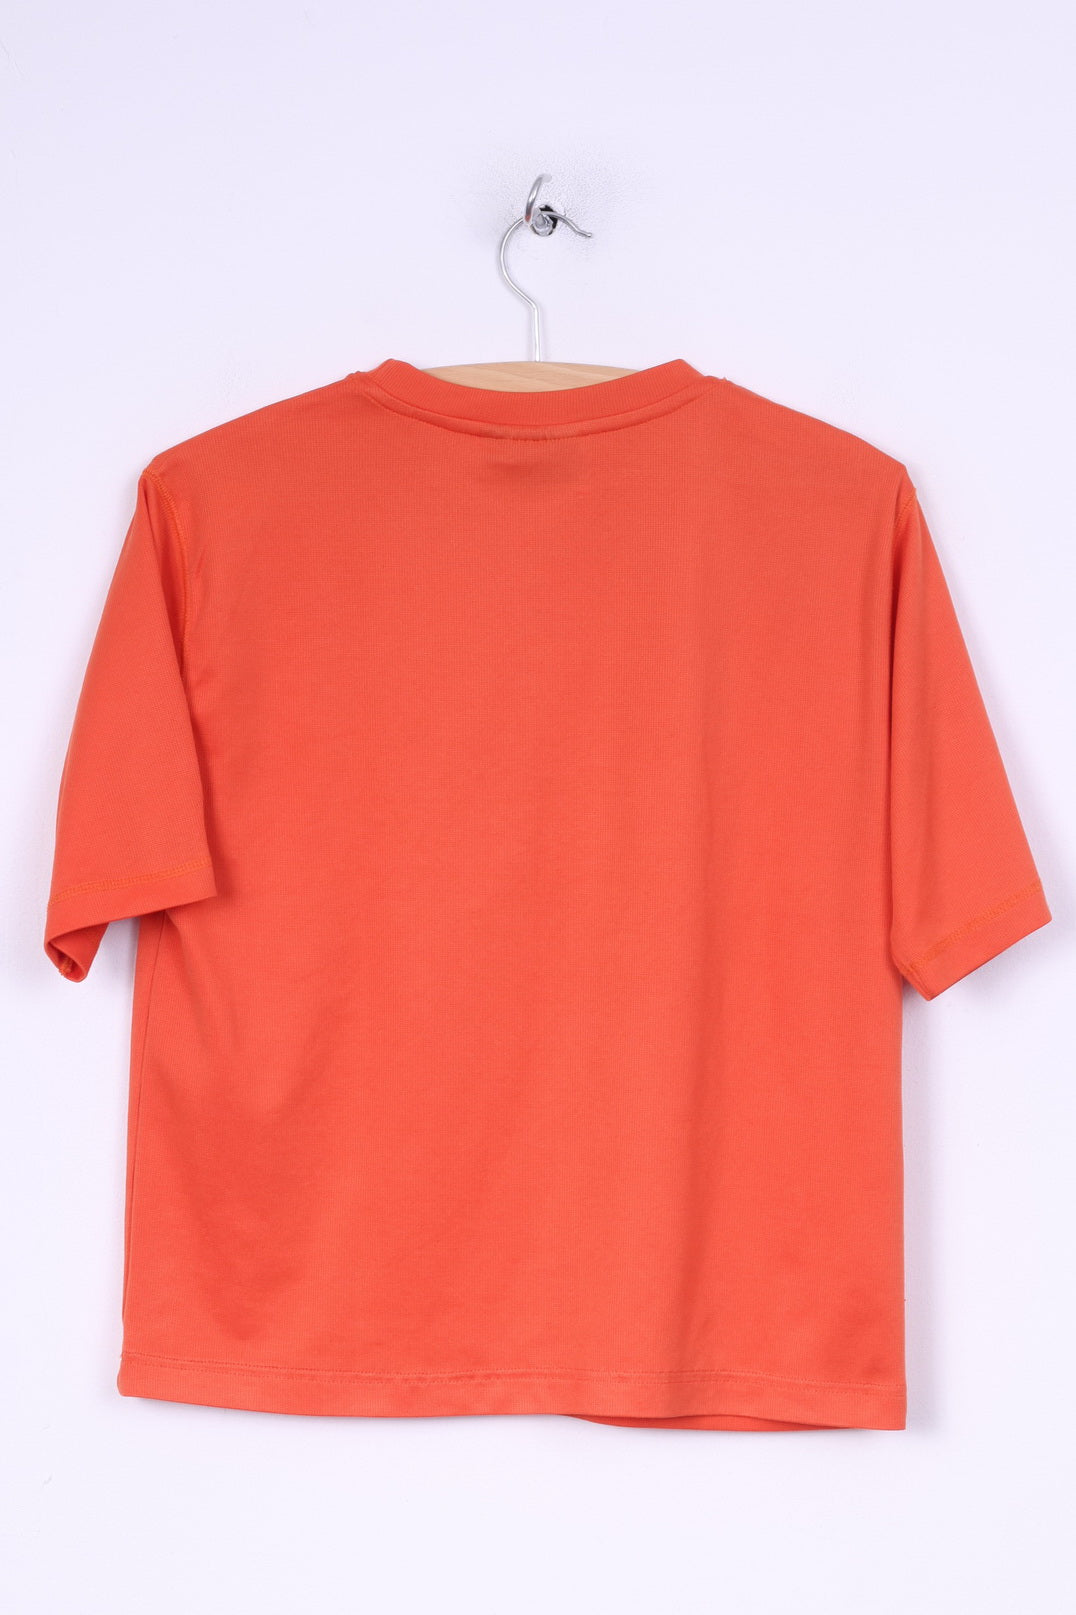 Salewa Womens S T-Shirt Crew Orange Manches Courtes Haut D'été Outdoor